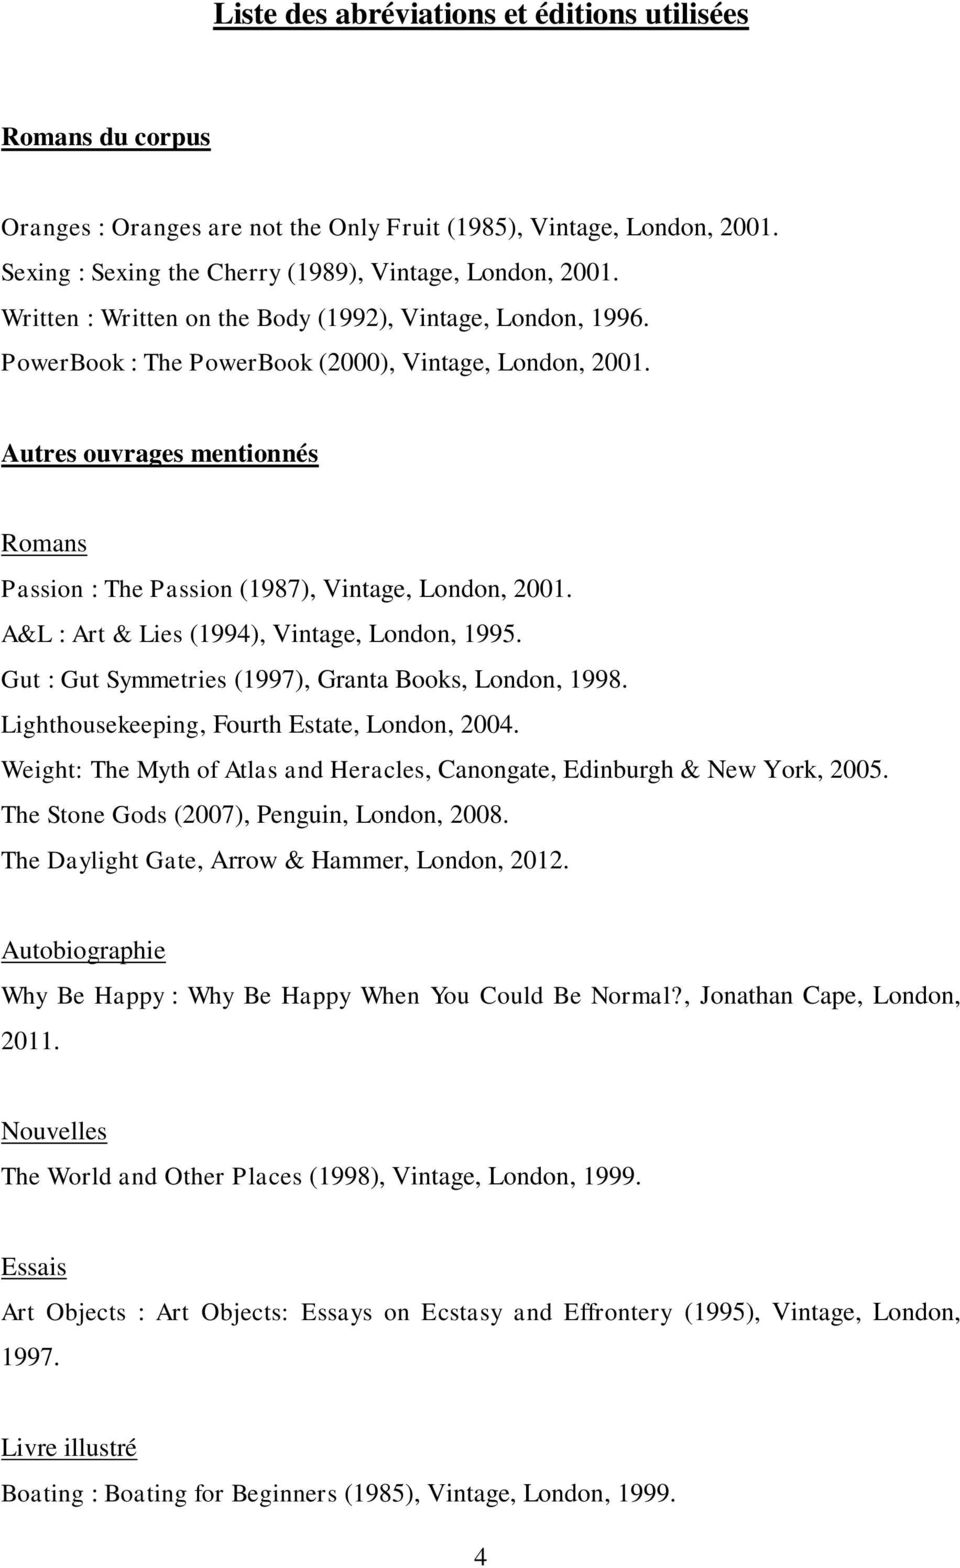 Autres ouvrages mentionnés Romans Passion : The Passion (1987), Vintage, London, 2001. A&L : Art & Lies (1994), Vintage, London, 1995. Gut : Gut Symmetries (1997), Granta Books, London, 1998.